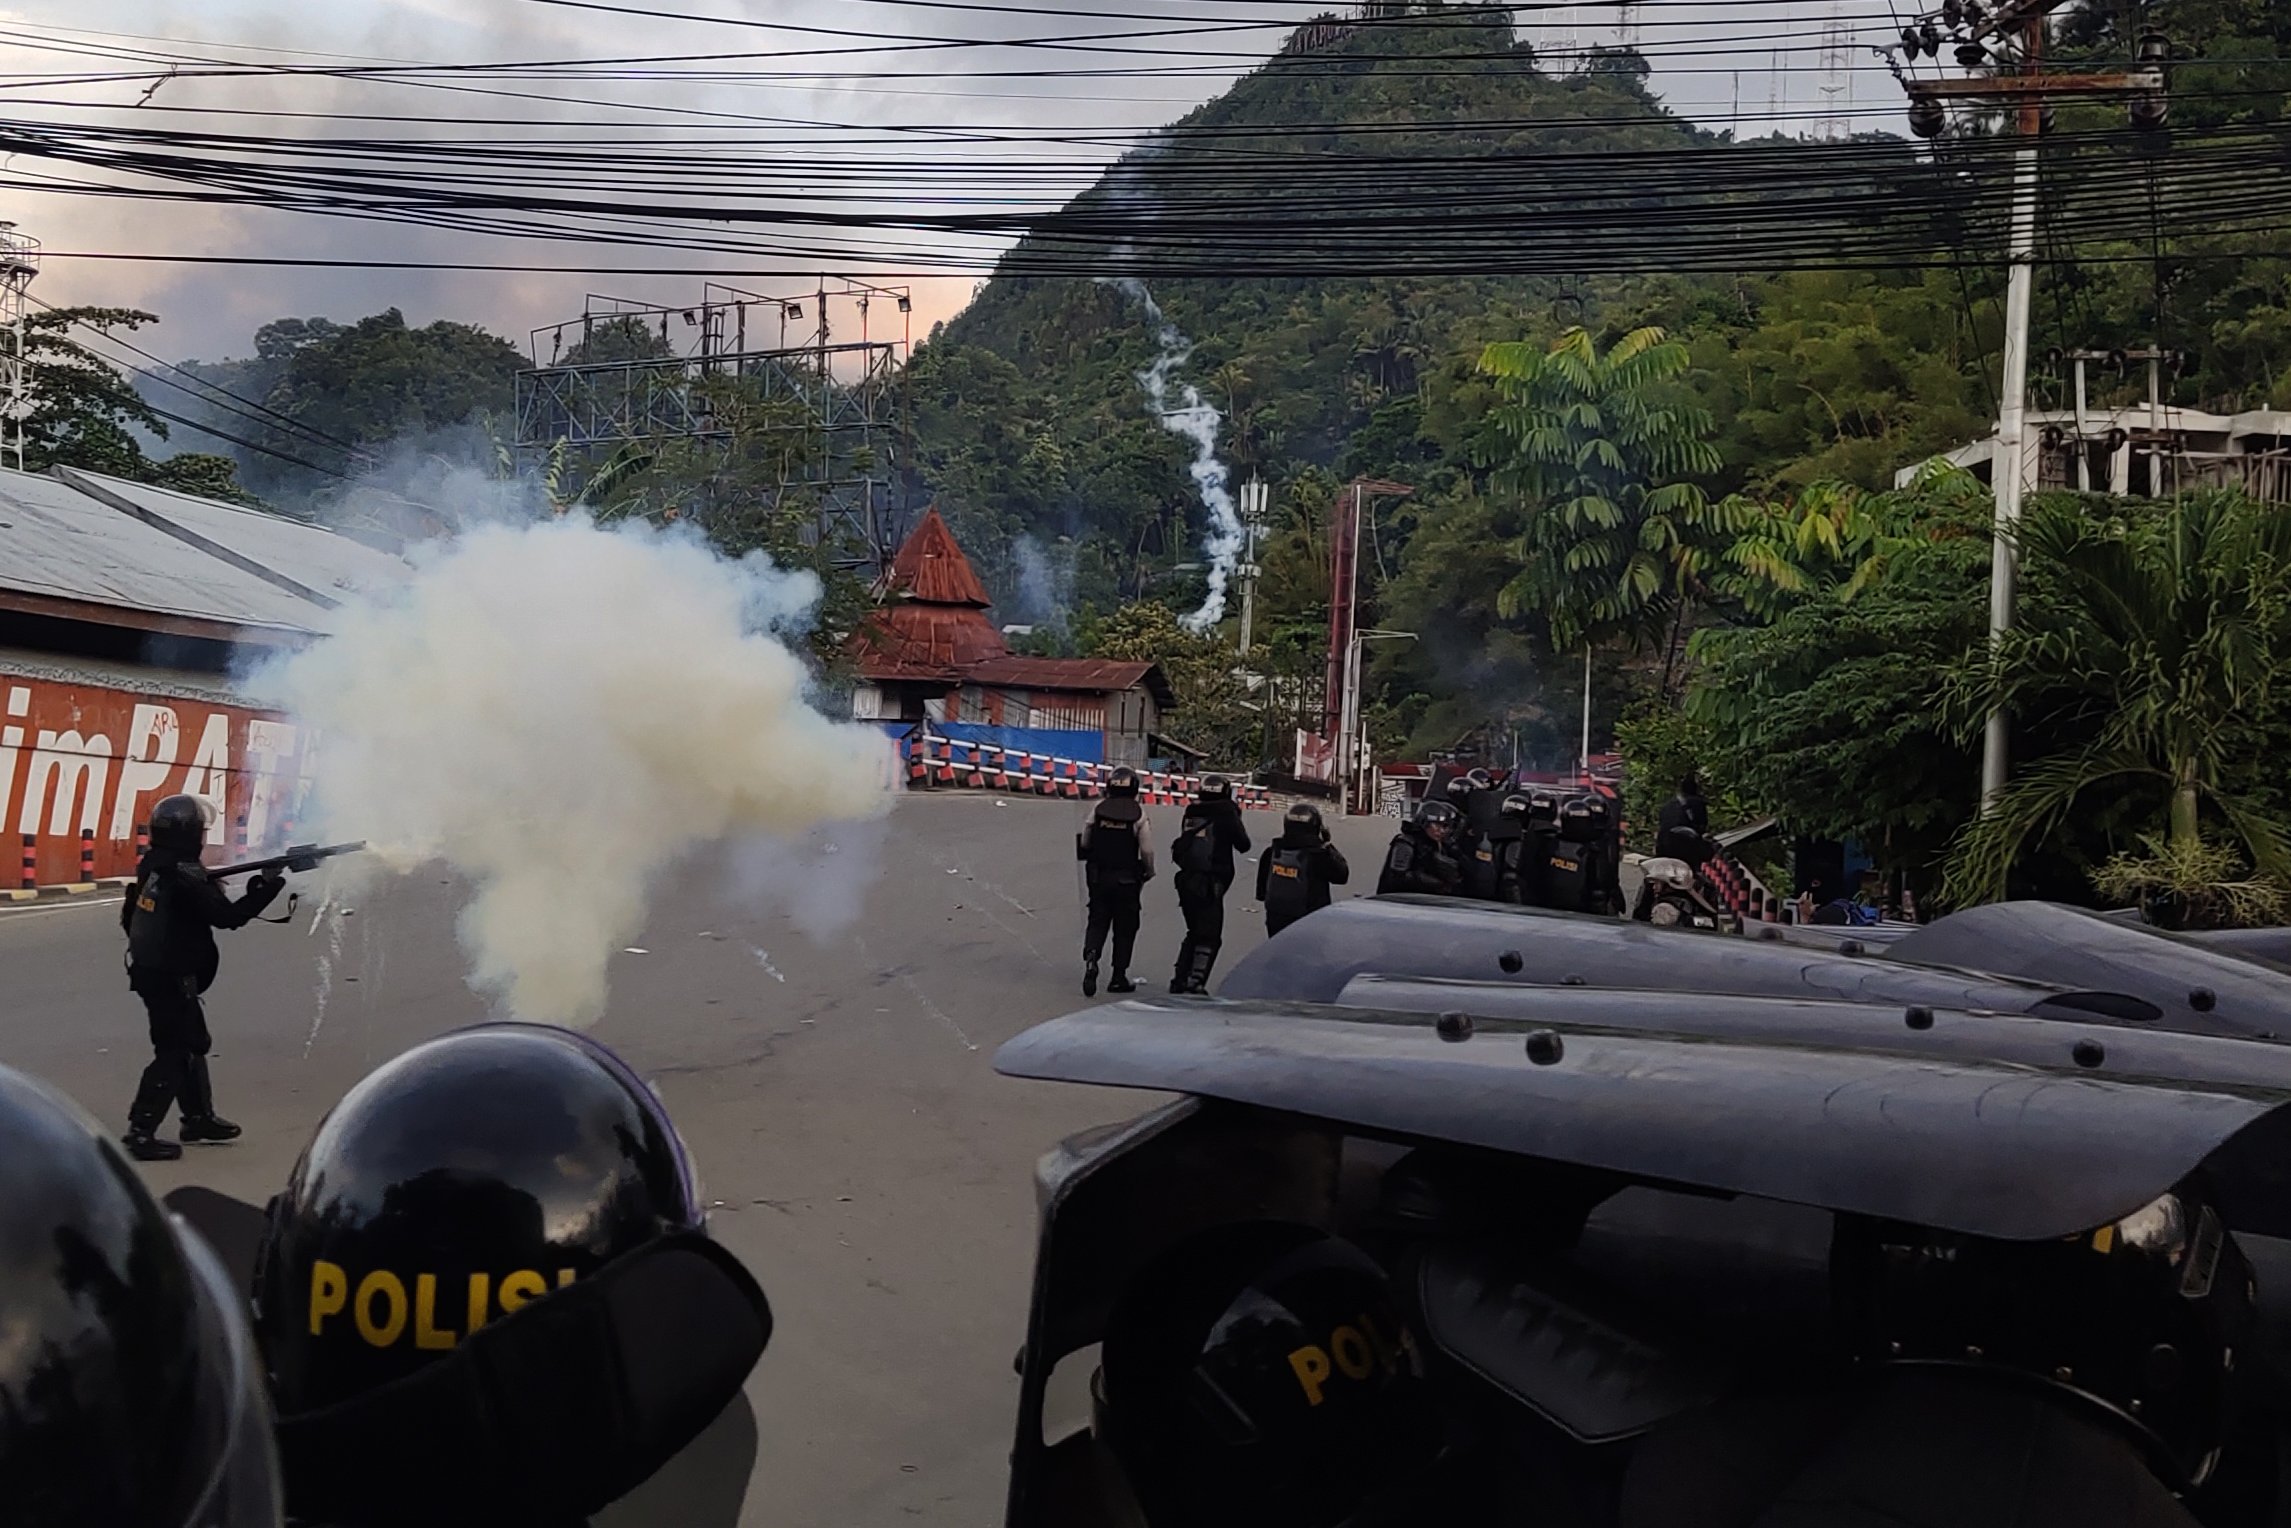 Petugas kepolisian melepaskan tembakan gas air mata untuk menghalau massa saat berlangsungnya aksi unjuk rasa di Jayapura, Papua, Kamis (29/8/2019). 